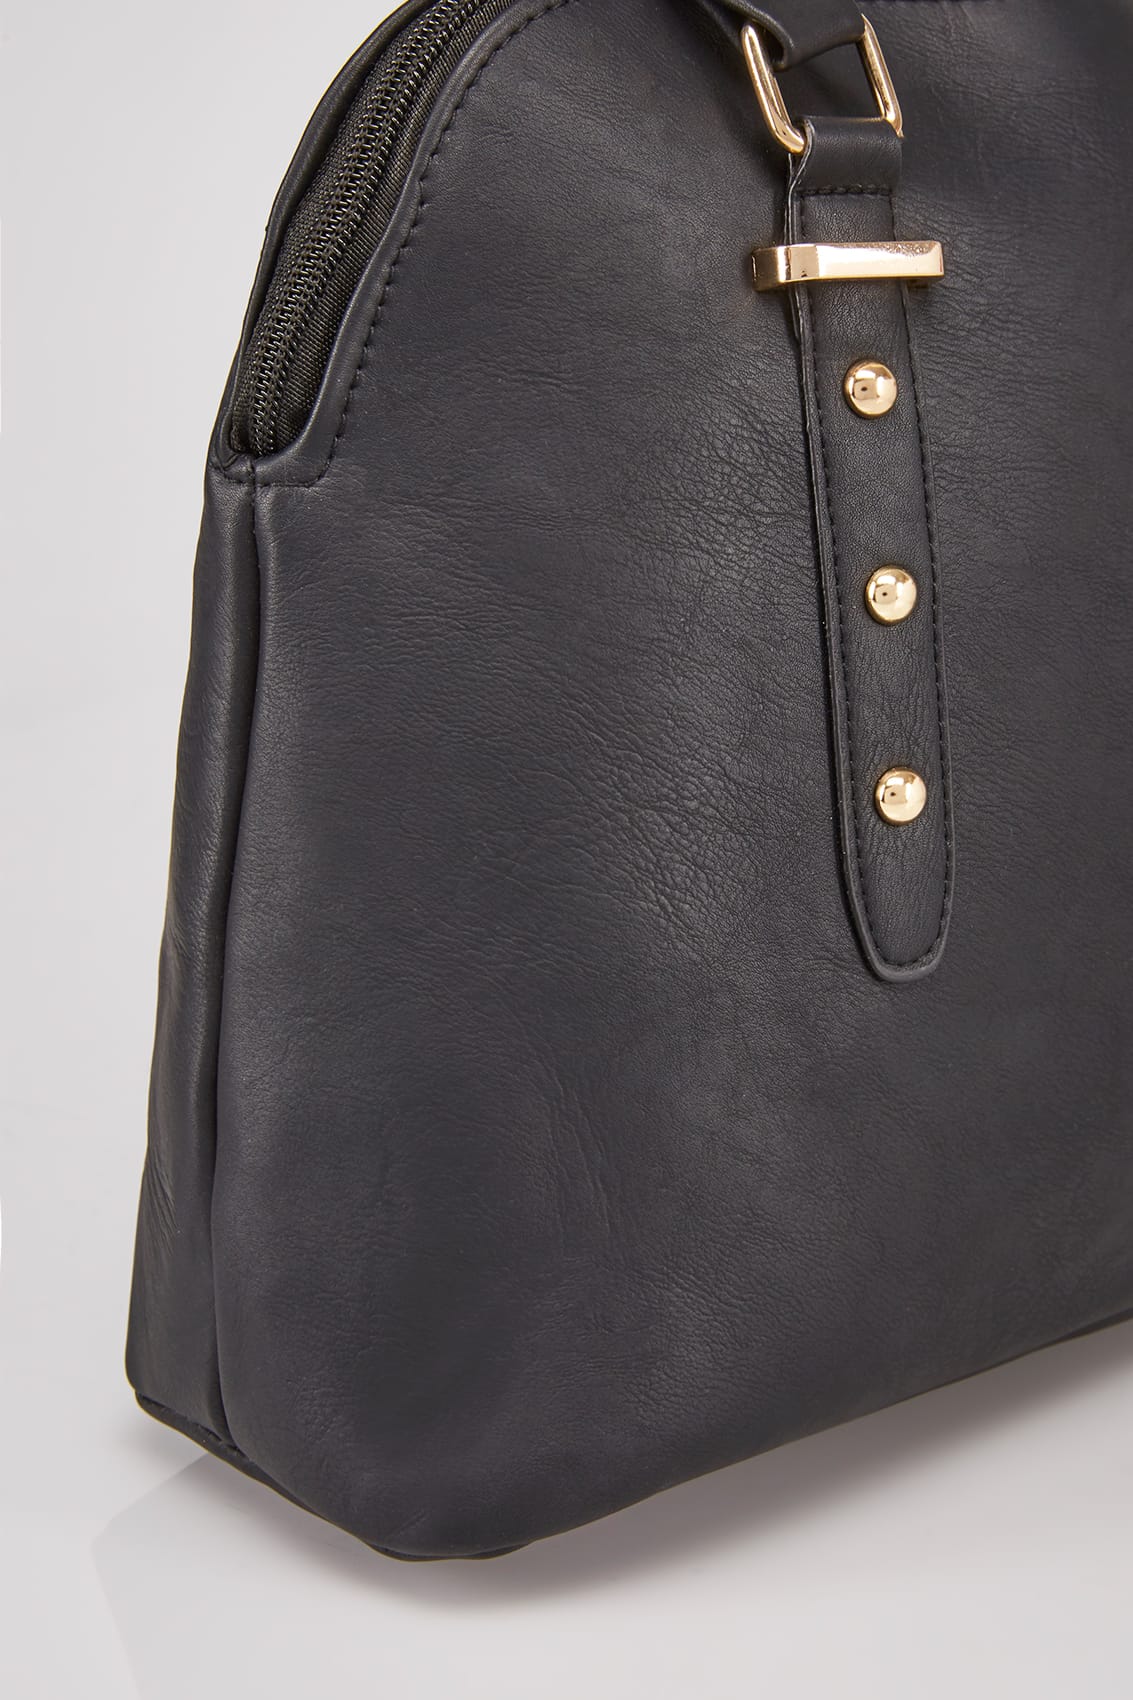 Black Studded Tote Bag With Adjustable Shoulder Strap